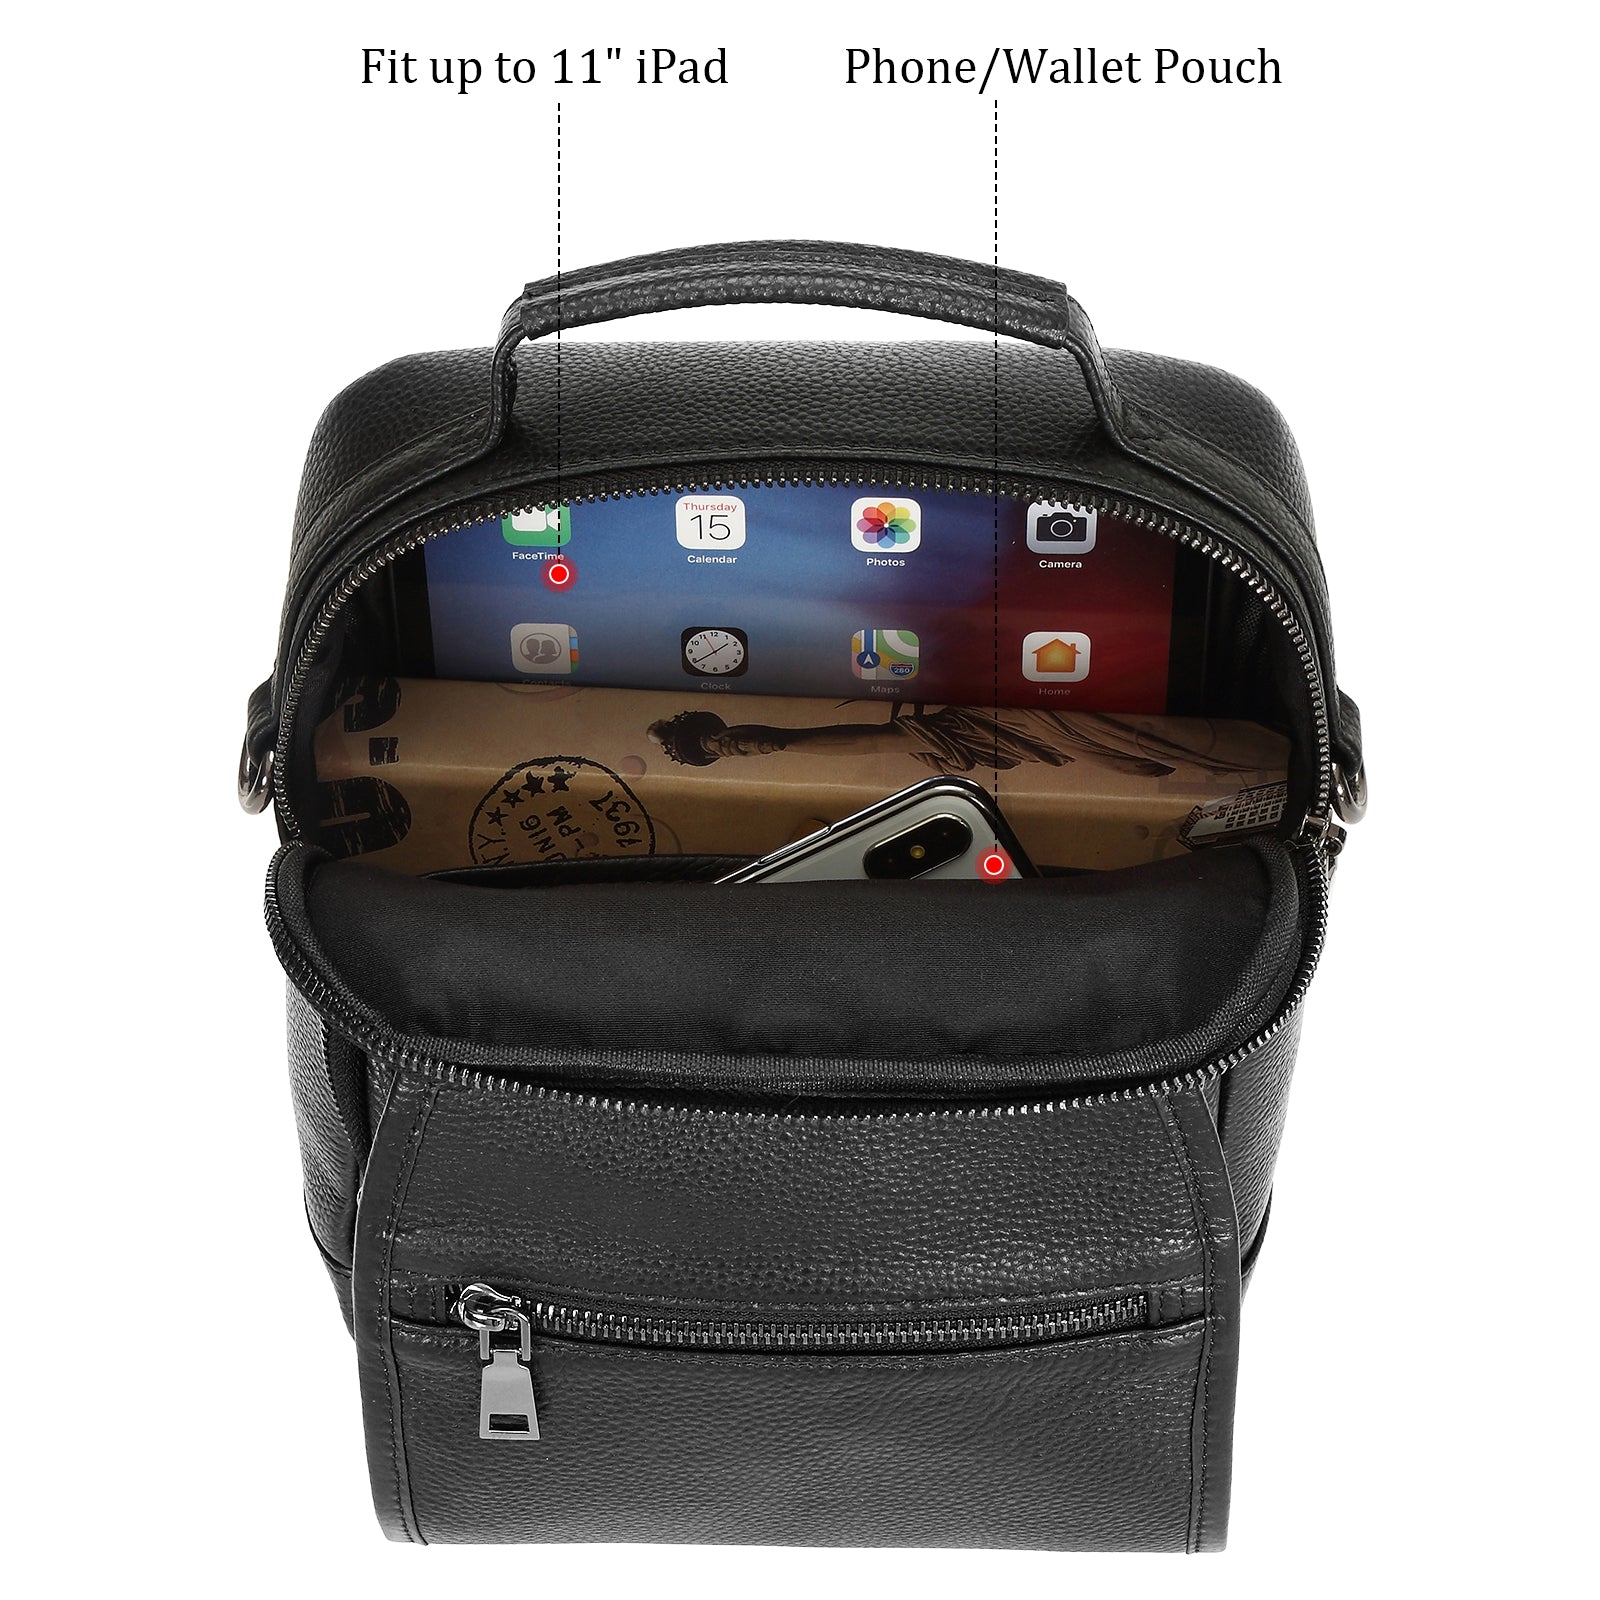 Italian Leather Messenger Bag Waterproof Travel Shoulder Bag (Inside)